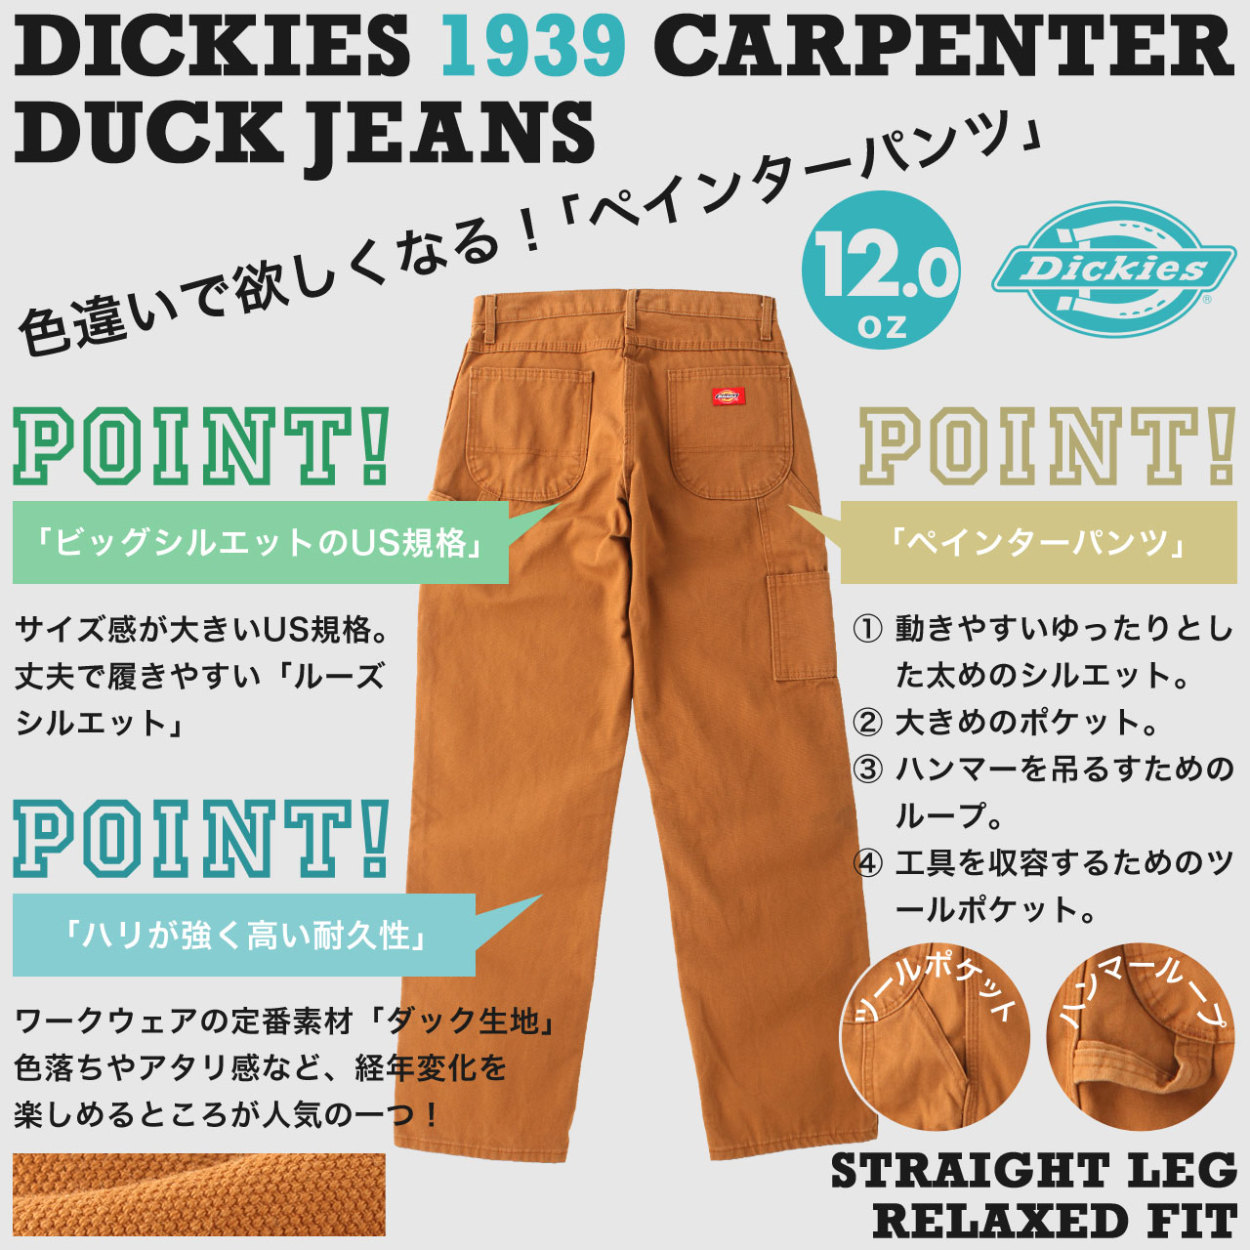 Dickies ディッキーズ 1939 ペインターパンツ メンズ ダック生地 リラックスフィット ワークパンツ 大きいサイズ 作業着 作業服  作業ズボン USAモデル【COP】 :dickies-du212:freshbox 通販 